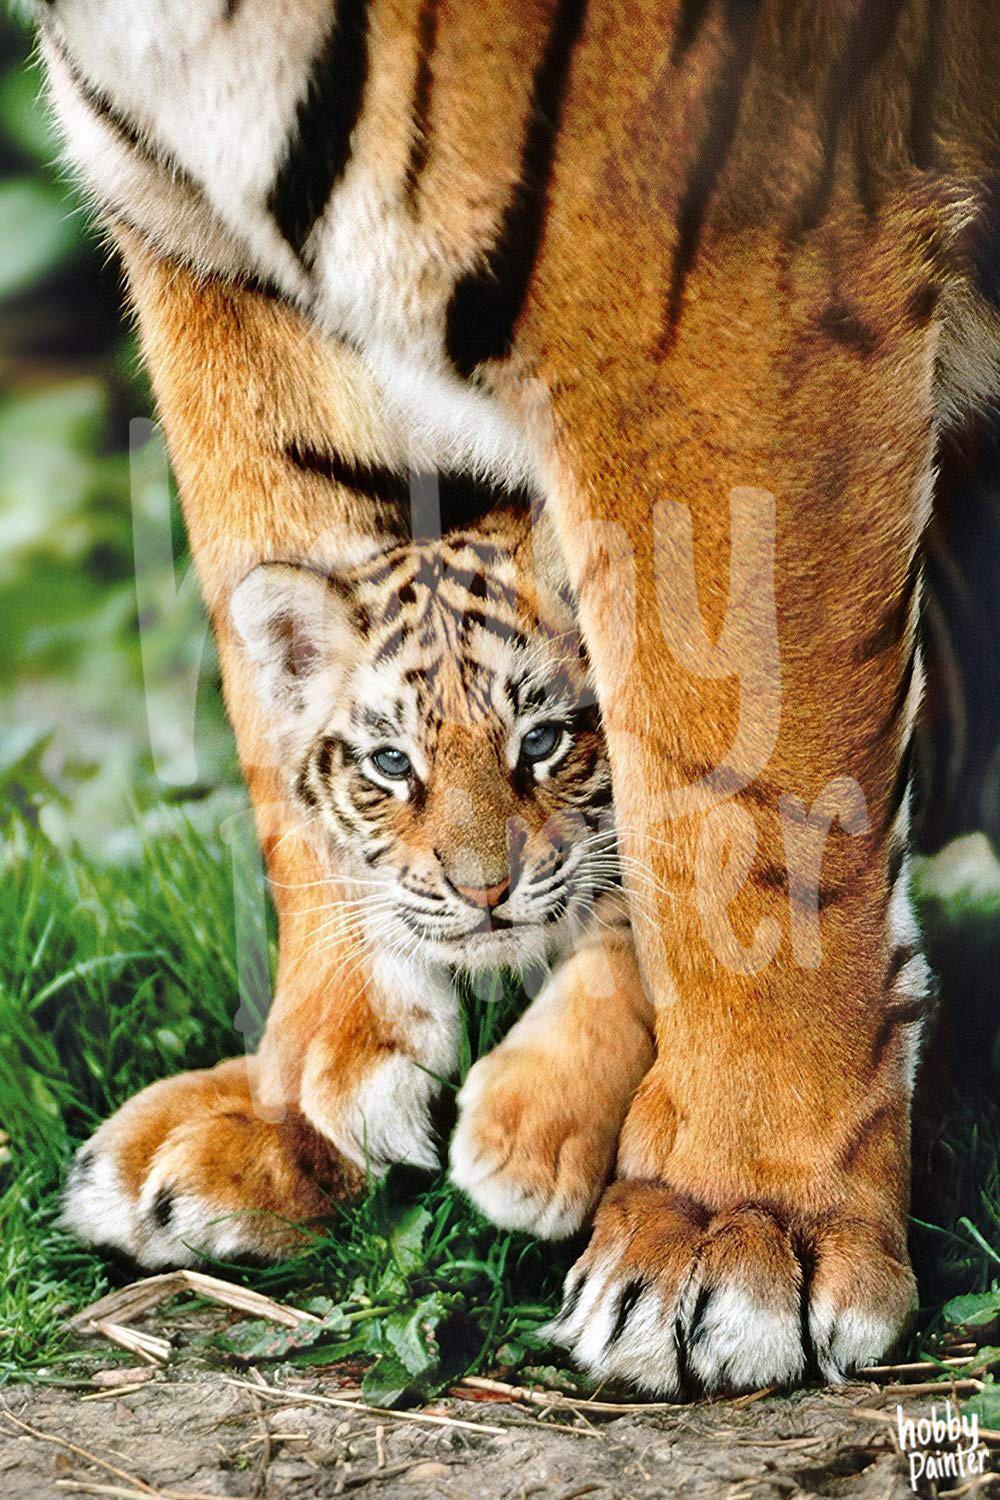 Diamond Painting Kitten tijger voorbeeld Hobby Painter